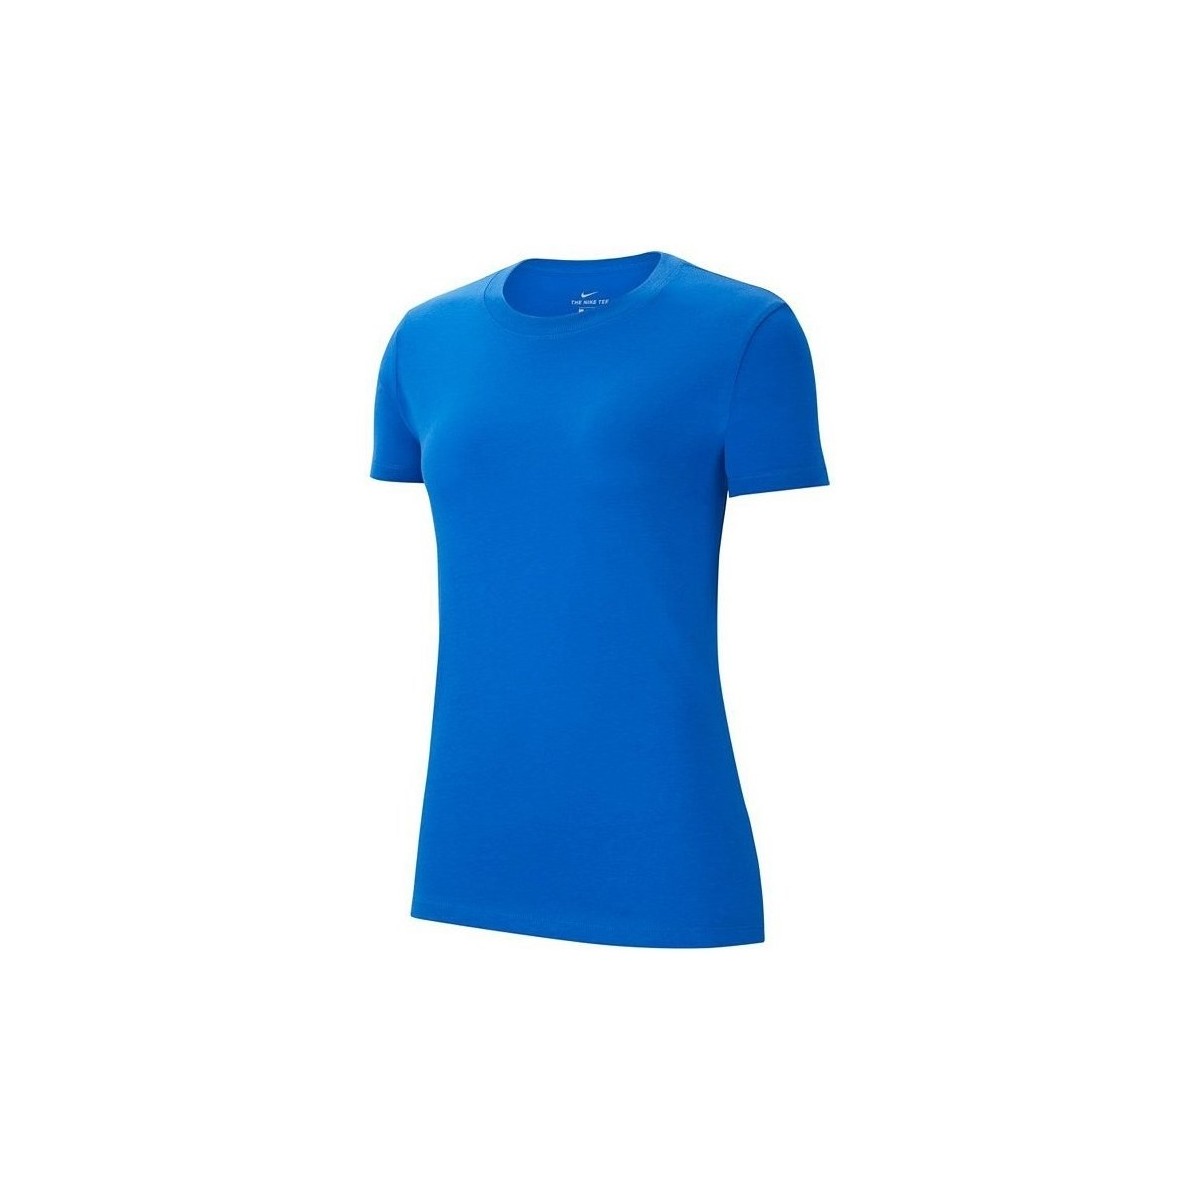 Textil Ženy Trička s krátkým rukávem Nike Wmns Park 20 Modrá